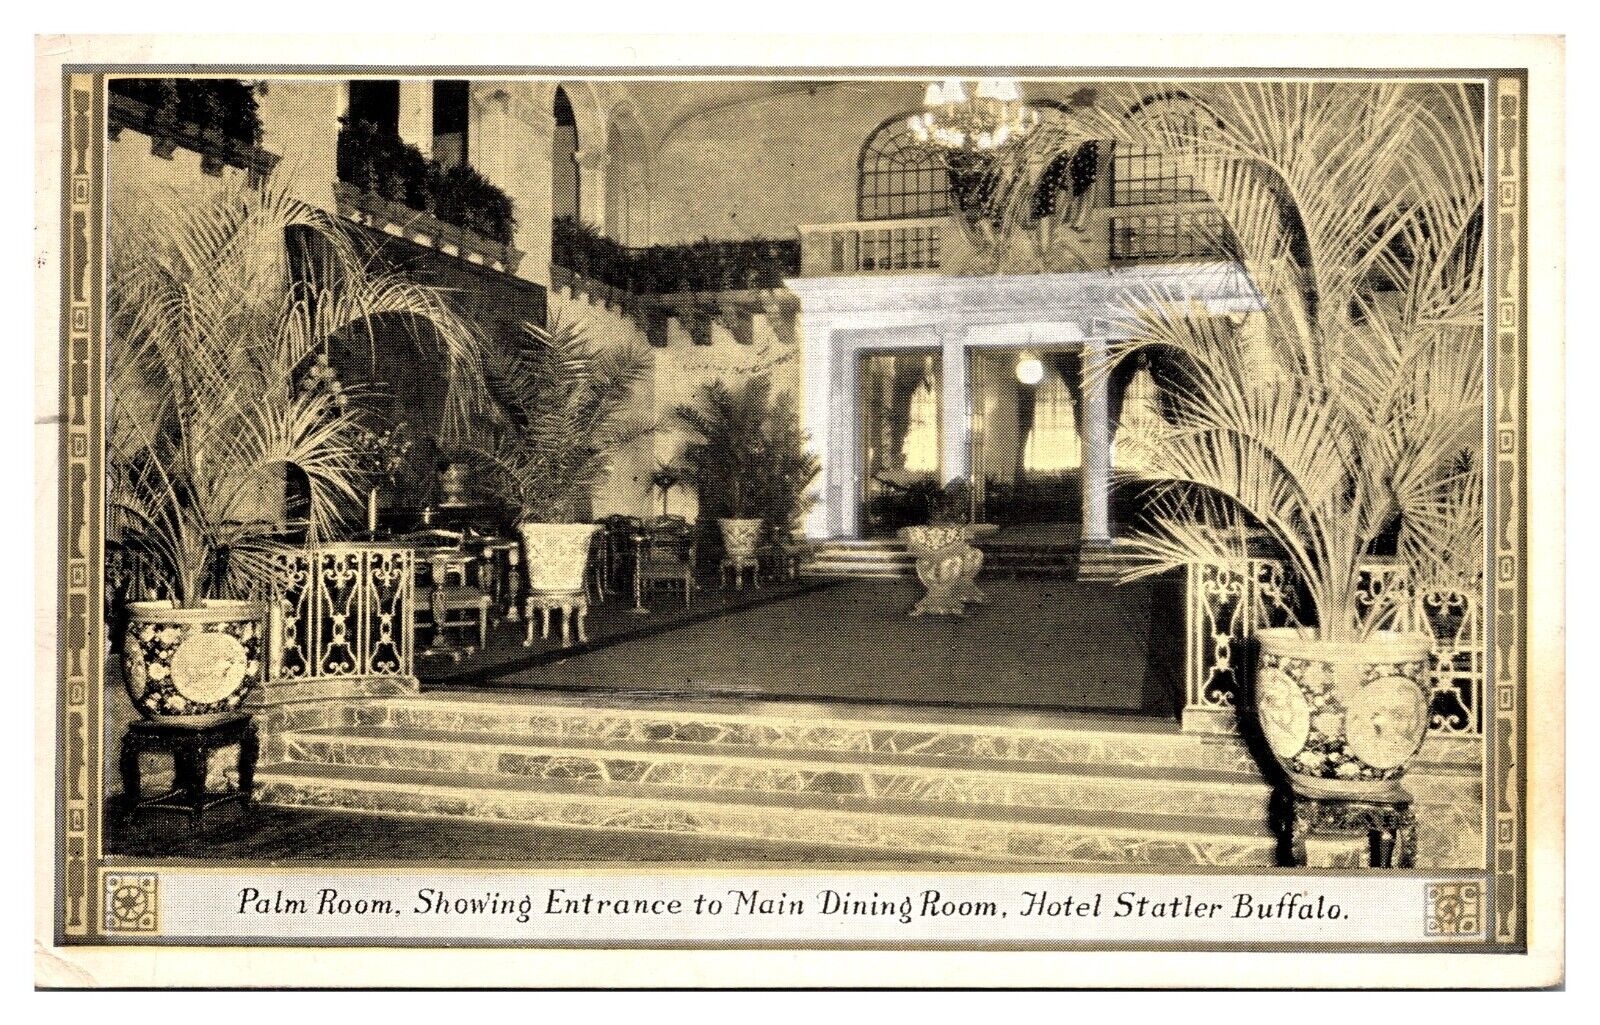 VTG Palm Room, Entrance to Main Dining Room, Hotel Statler, Buffalo, NY 